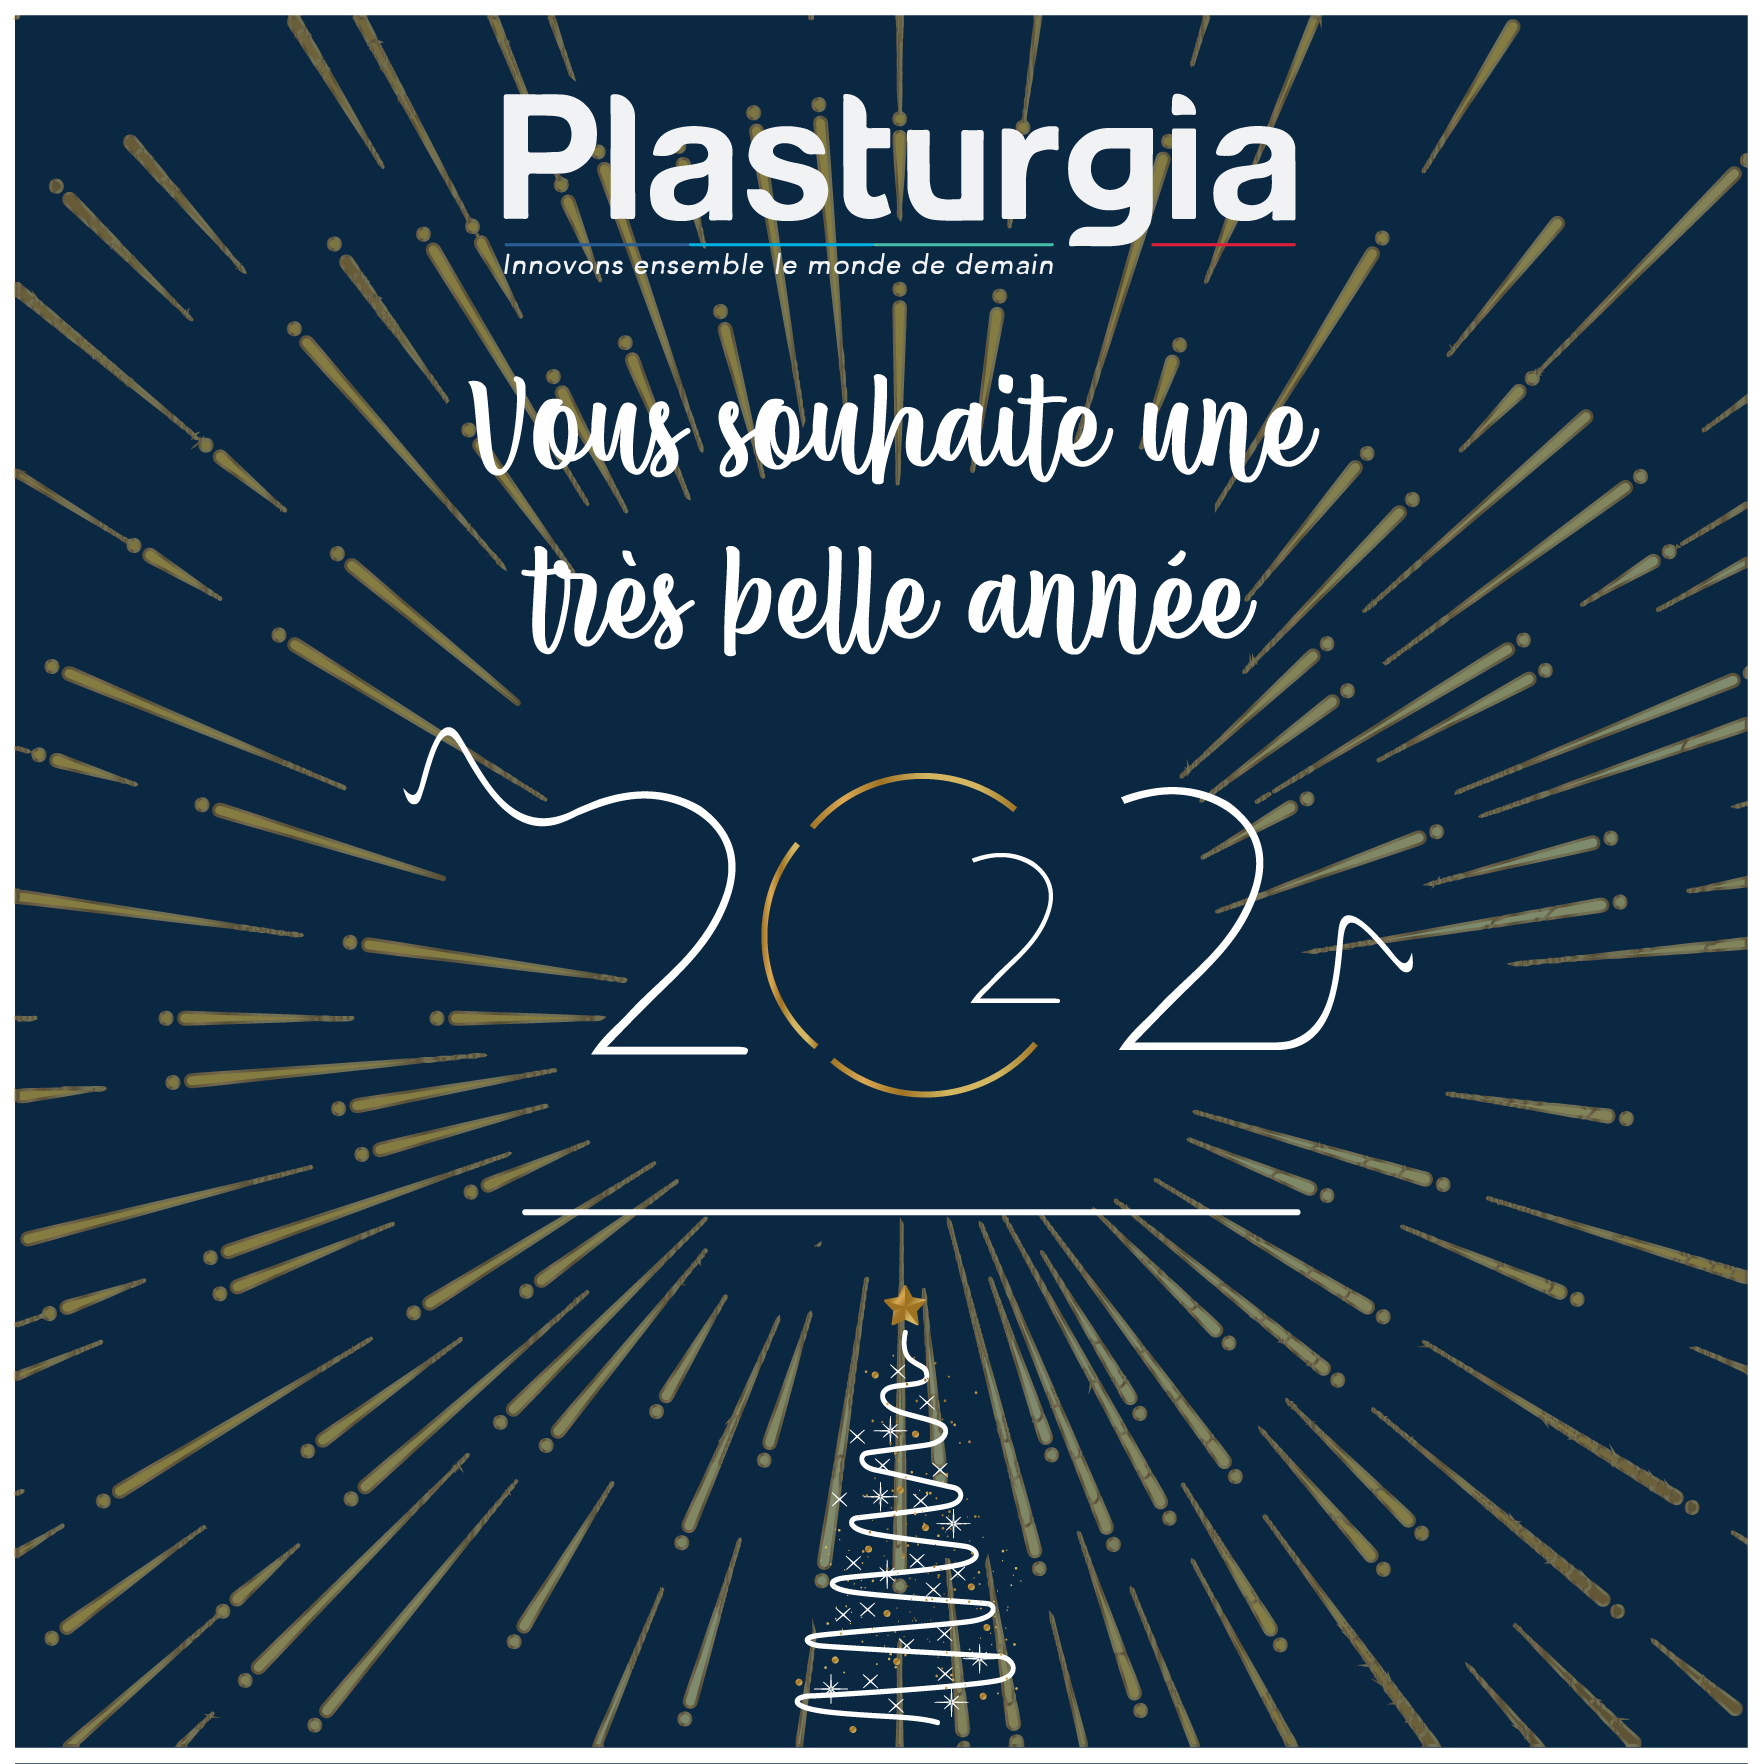 Très belle année 2022 - Plasturgia